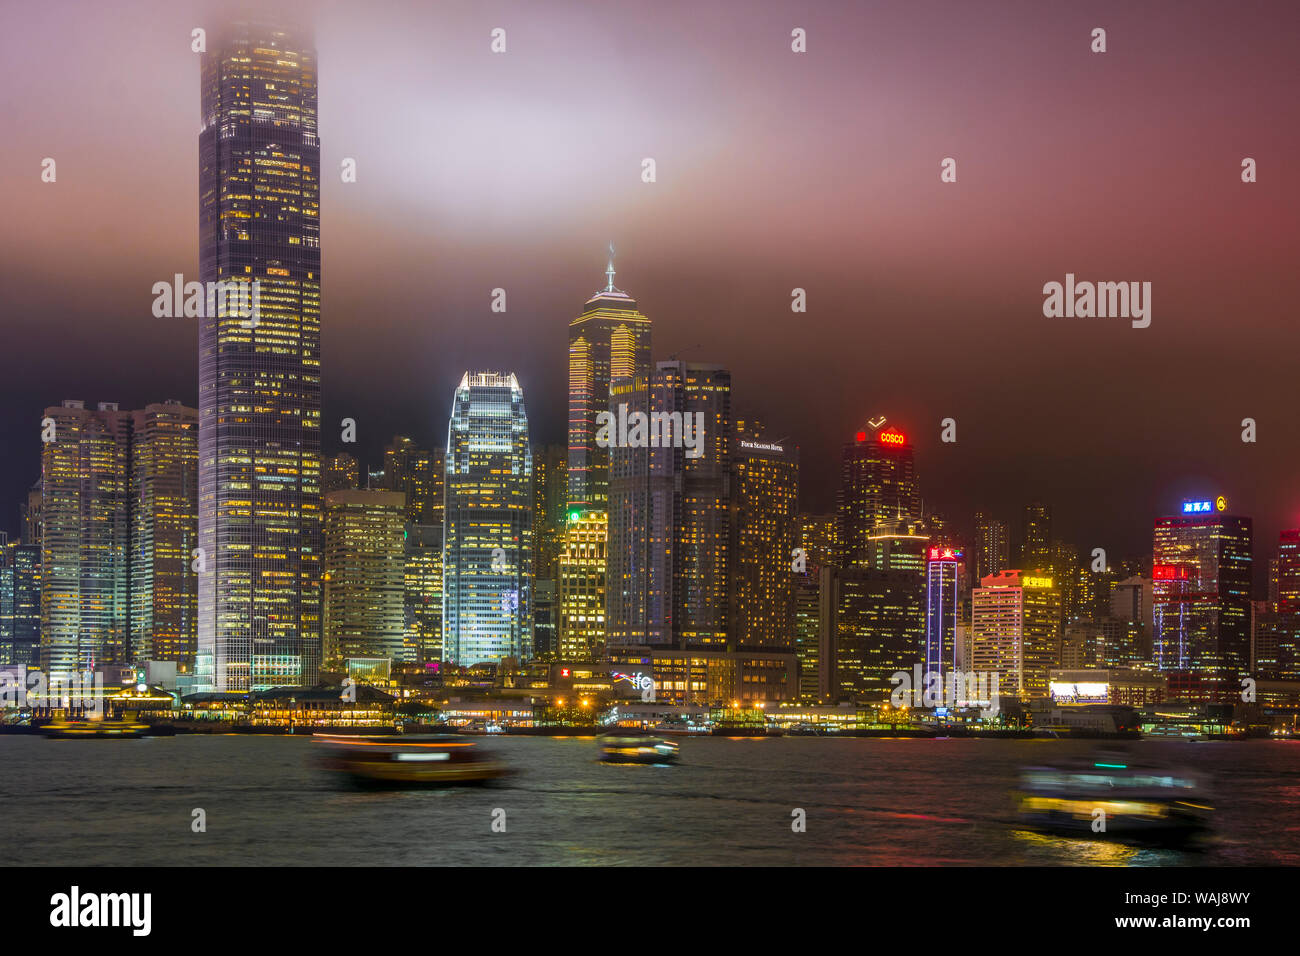 L'île de Hong Kong skyline et le port de Victoria, Hong Kong, Chine. Banque D'Images